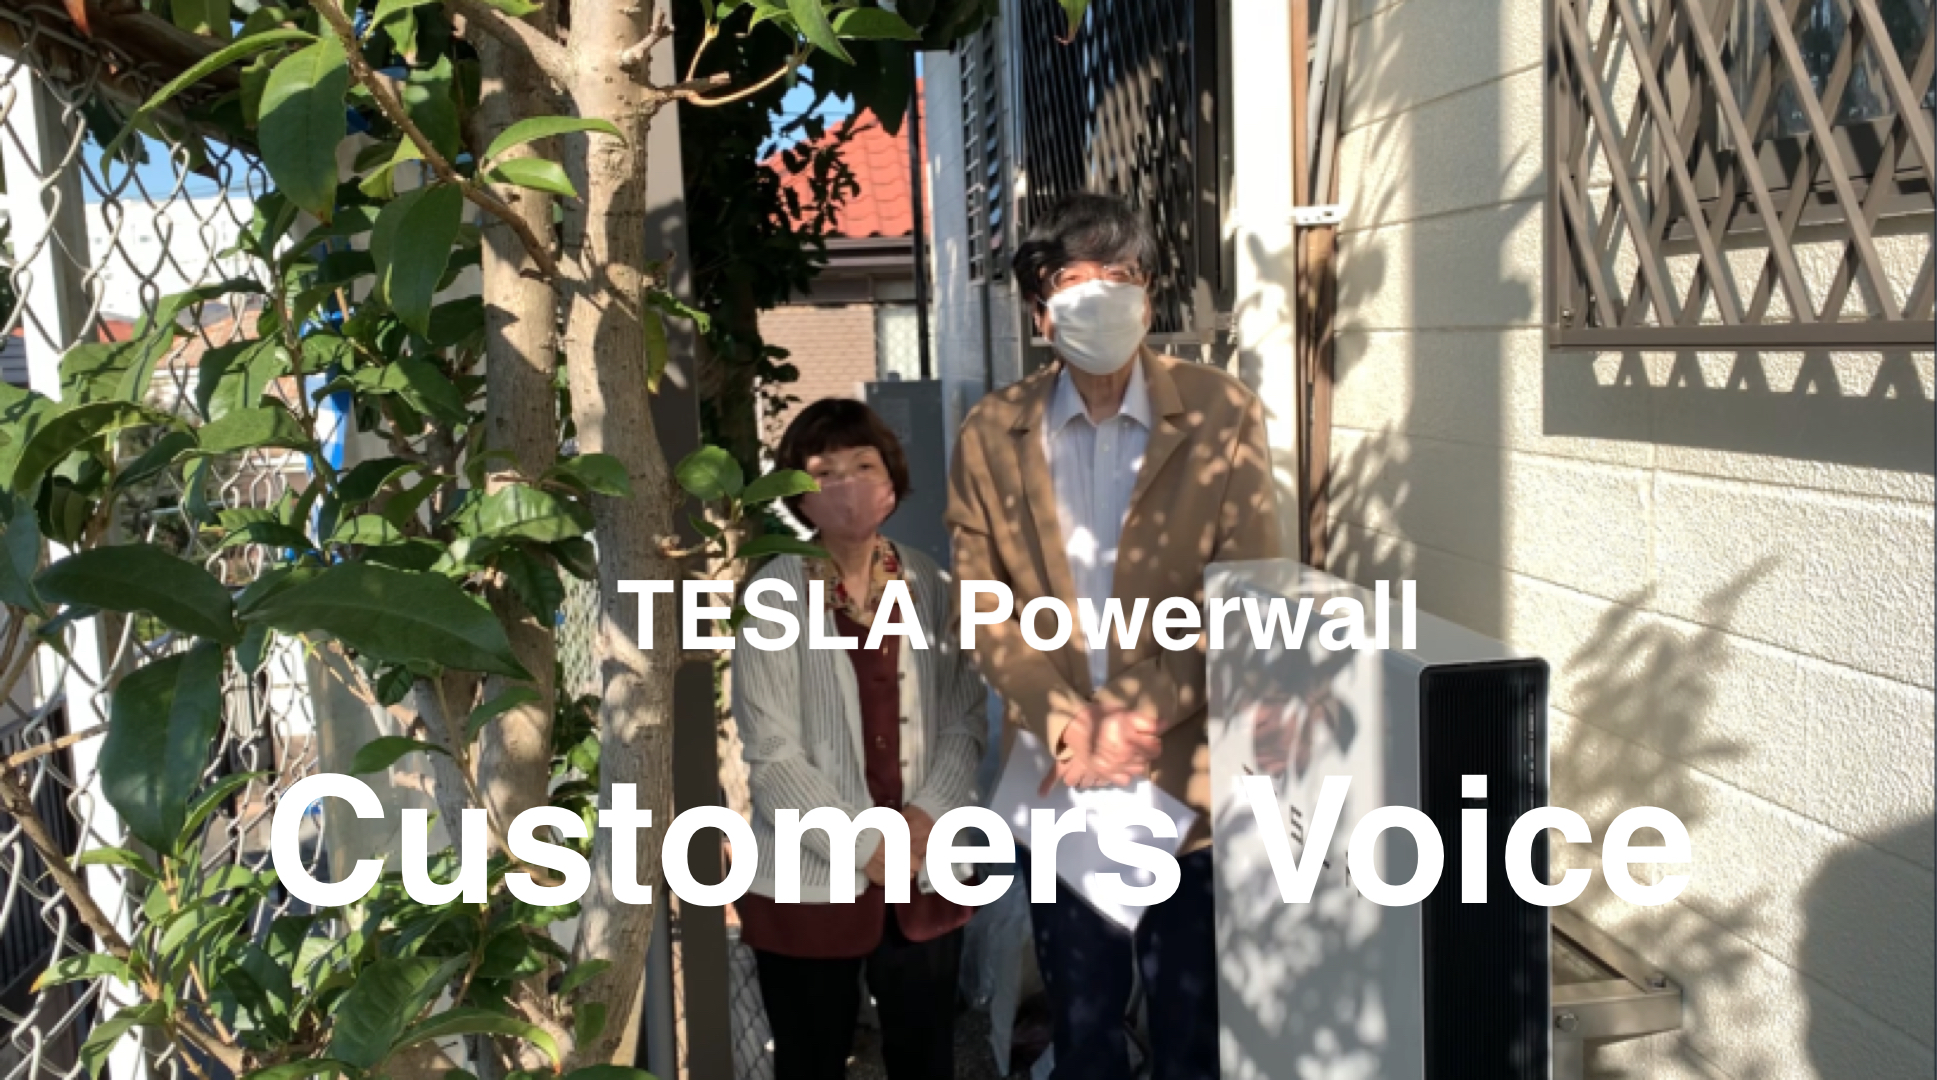 太陽光発電なし 家庭用蓄電池テスラパワーウォ ル Powerwall 設置者の声